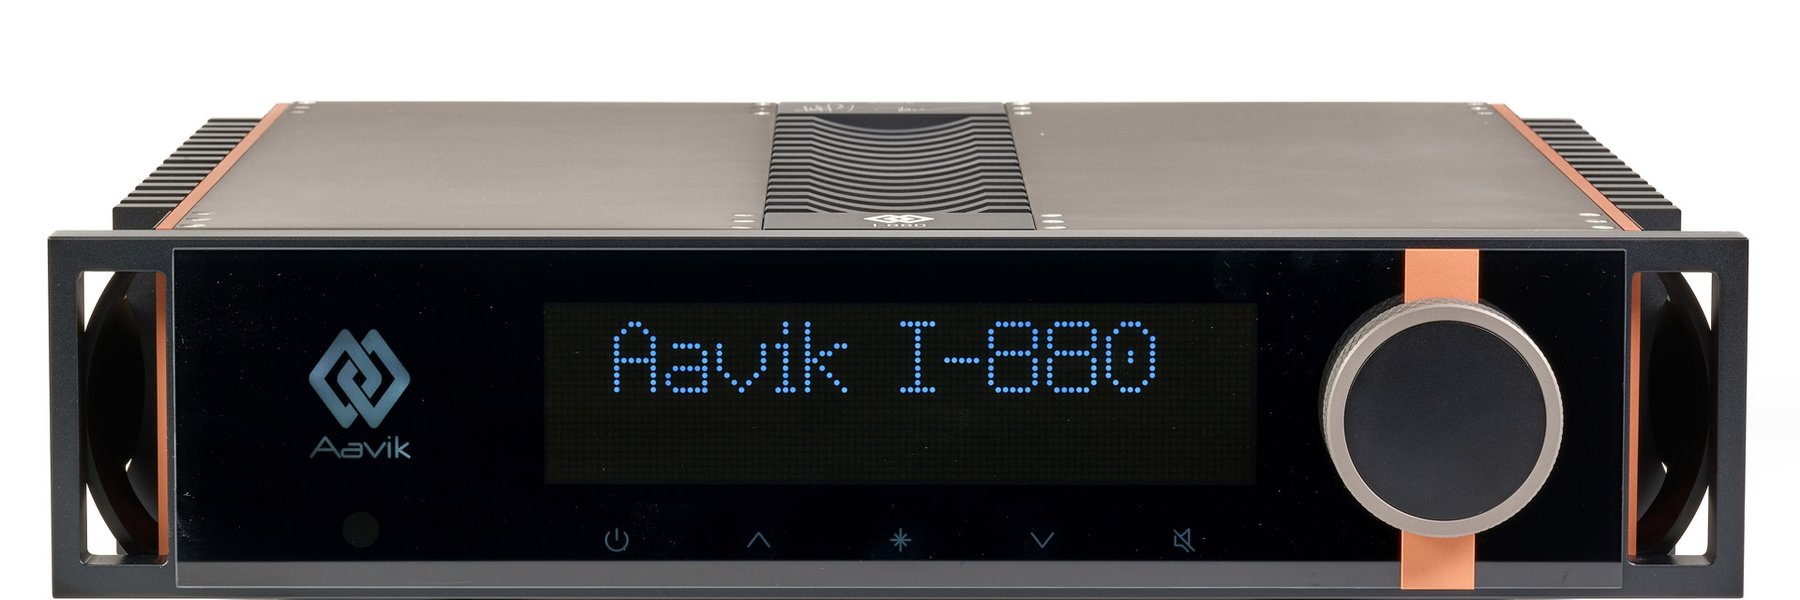 Интегральный усилитель Aavik I-880